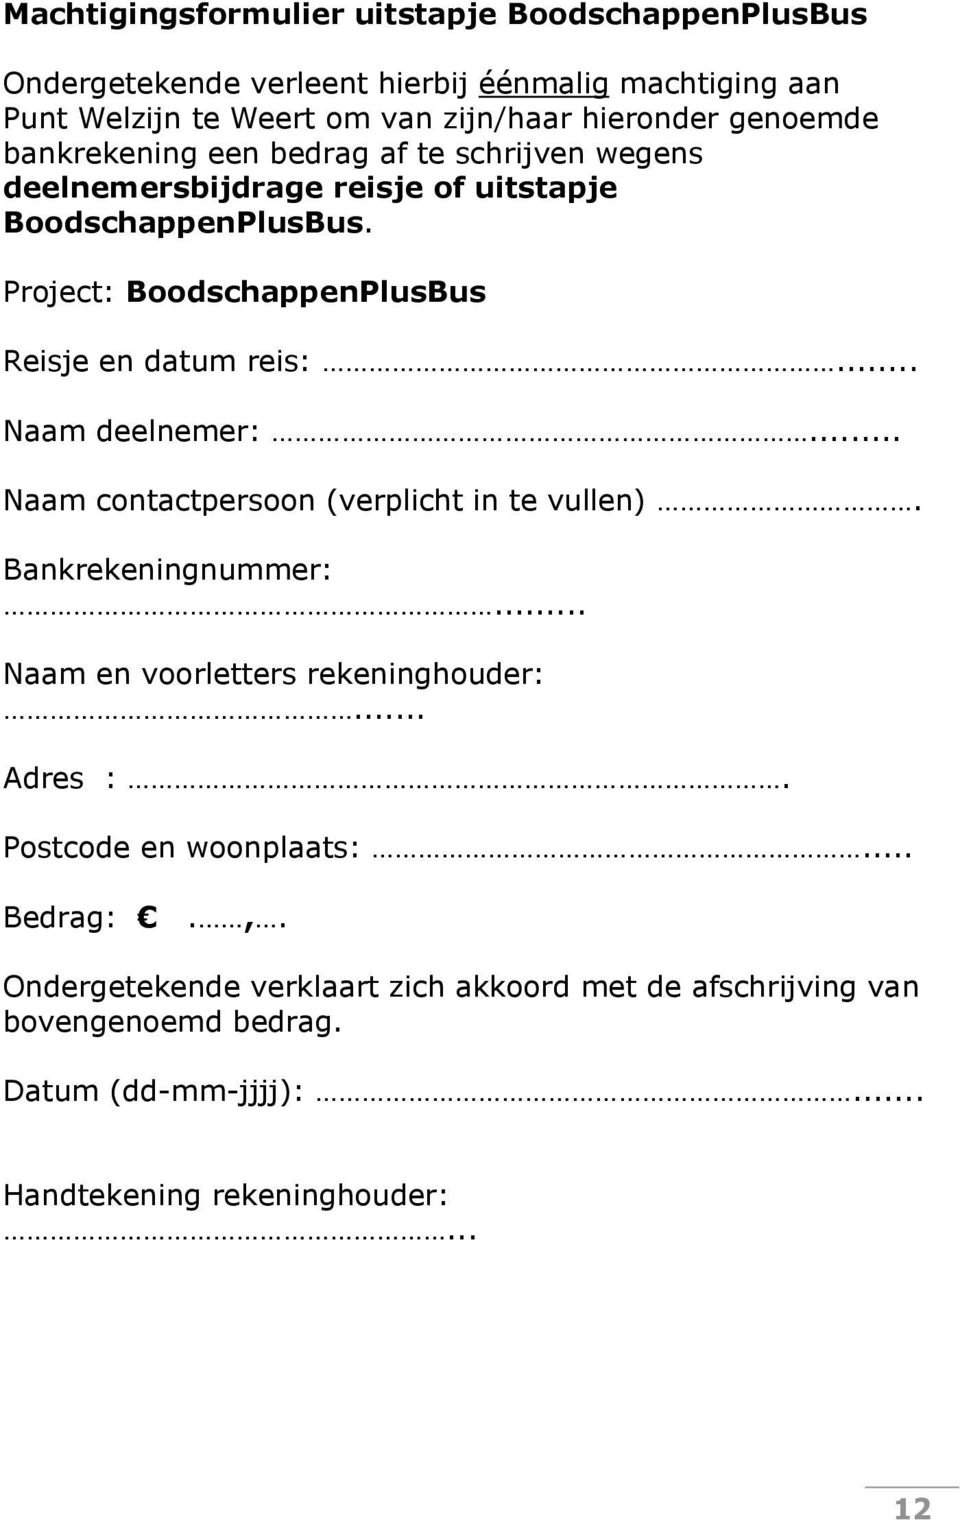 Project: BoodschappenPlusBus Reisje en datum reis:... Naam deelnemer:... Naam contactpersoon (verplicht in te vullen). Bankrekeningnummer:.